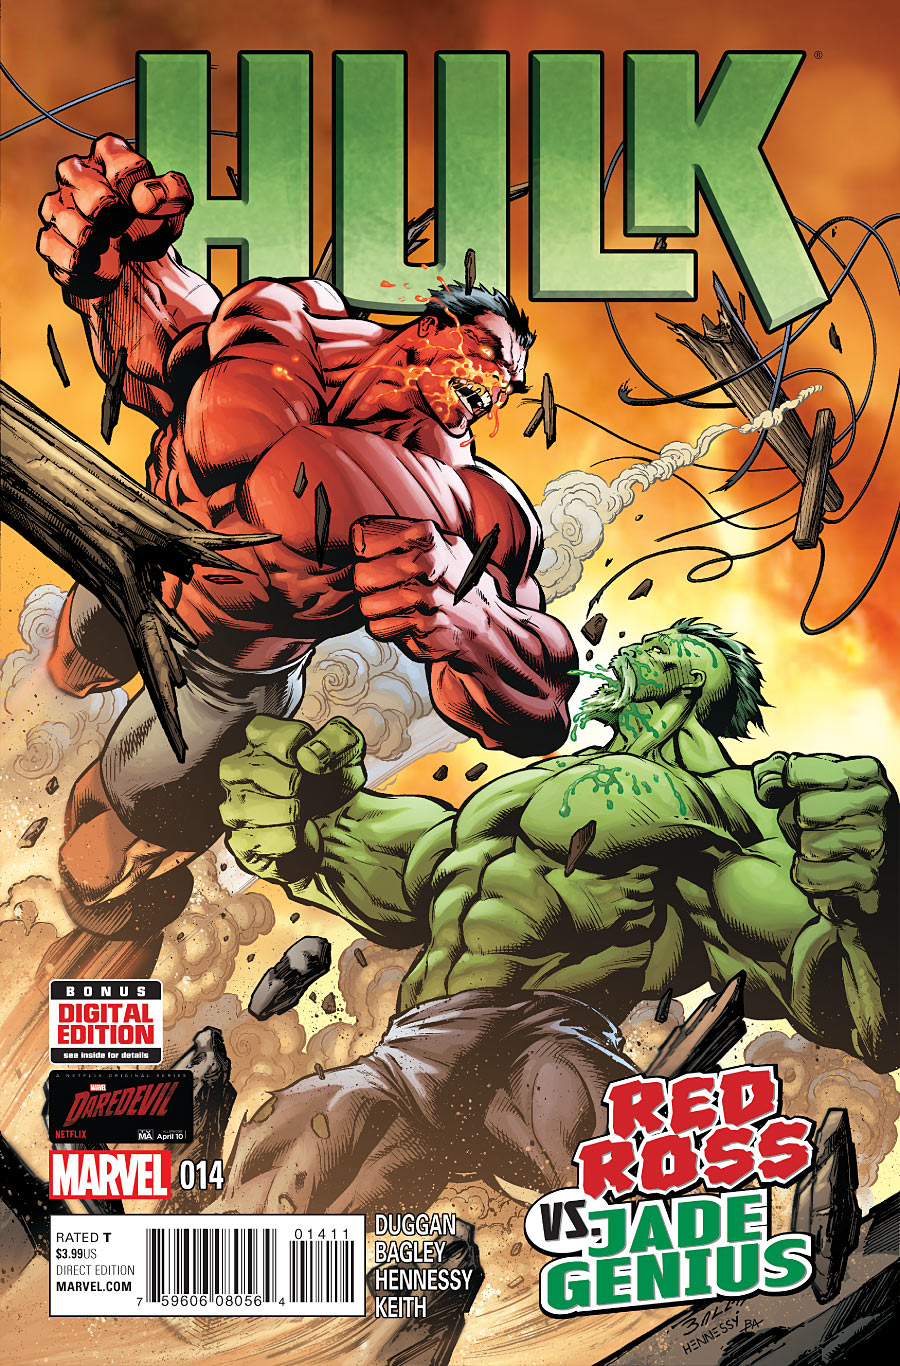 Hulk Vol. 3 #14